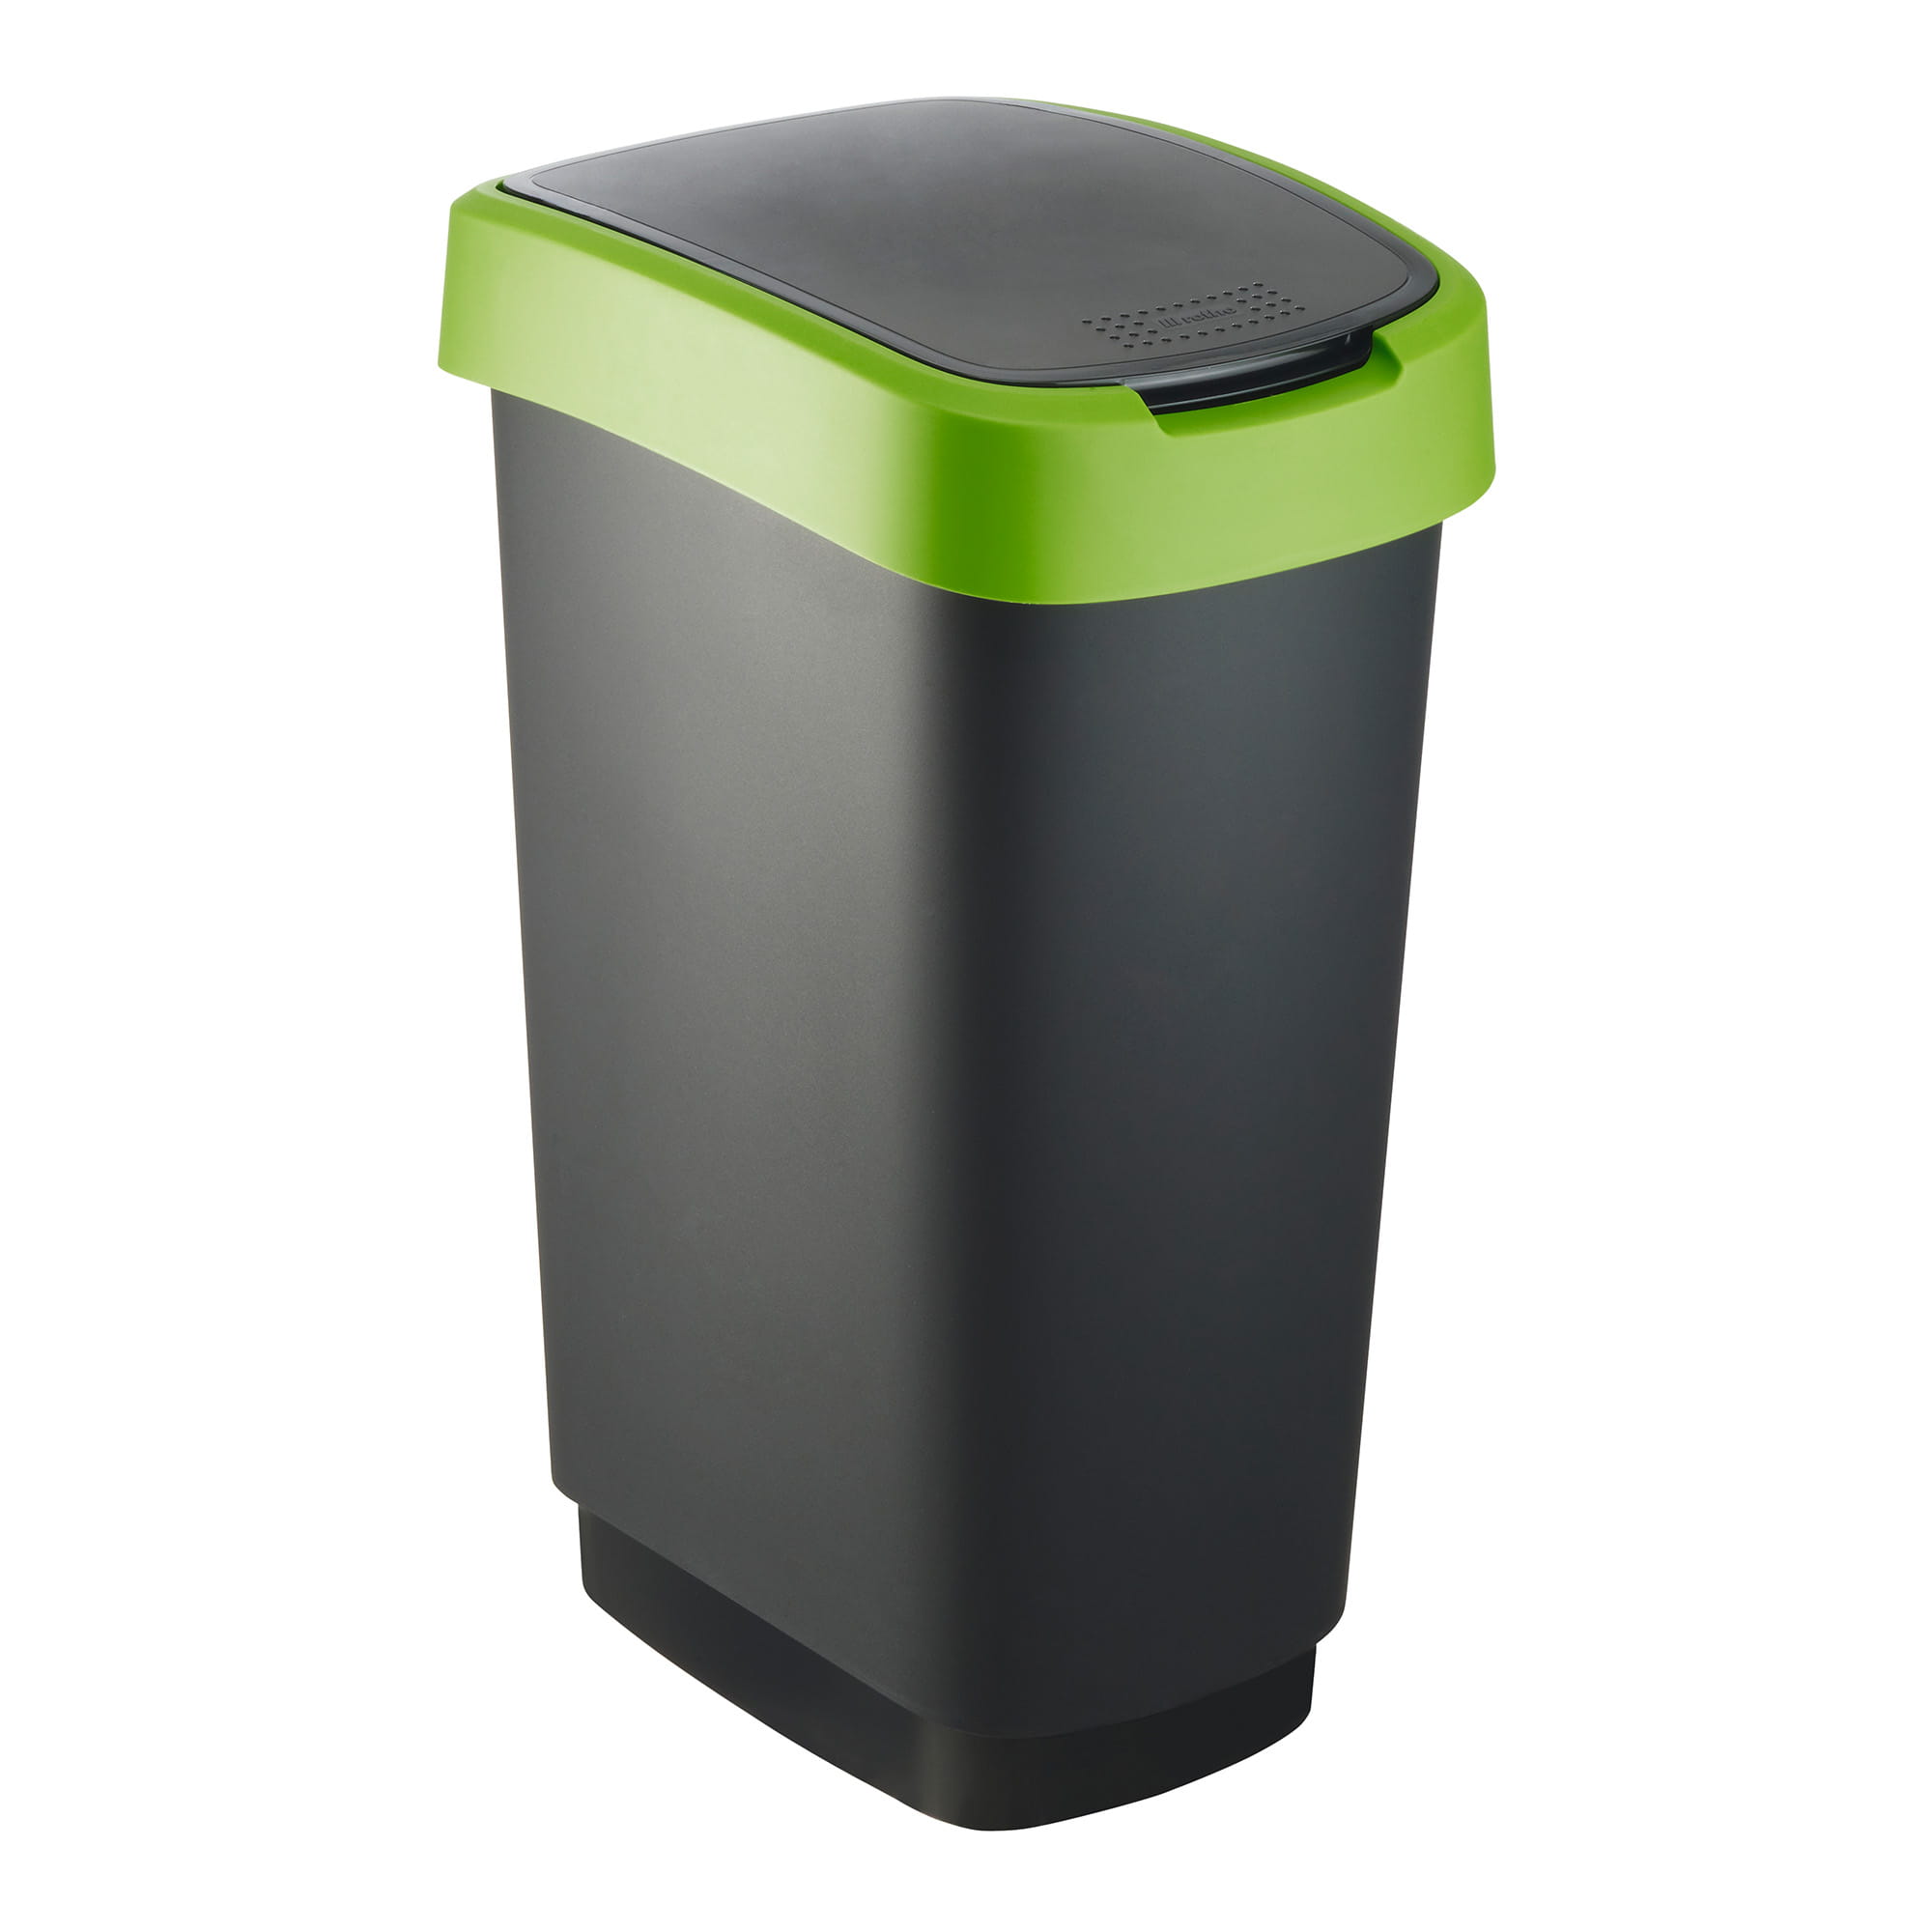 RothoPro Twist Abfallbehälter 50 Liter schwarz/grün 59135445_1